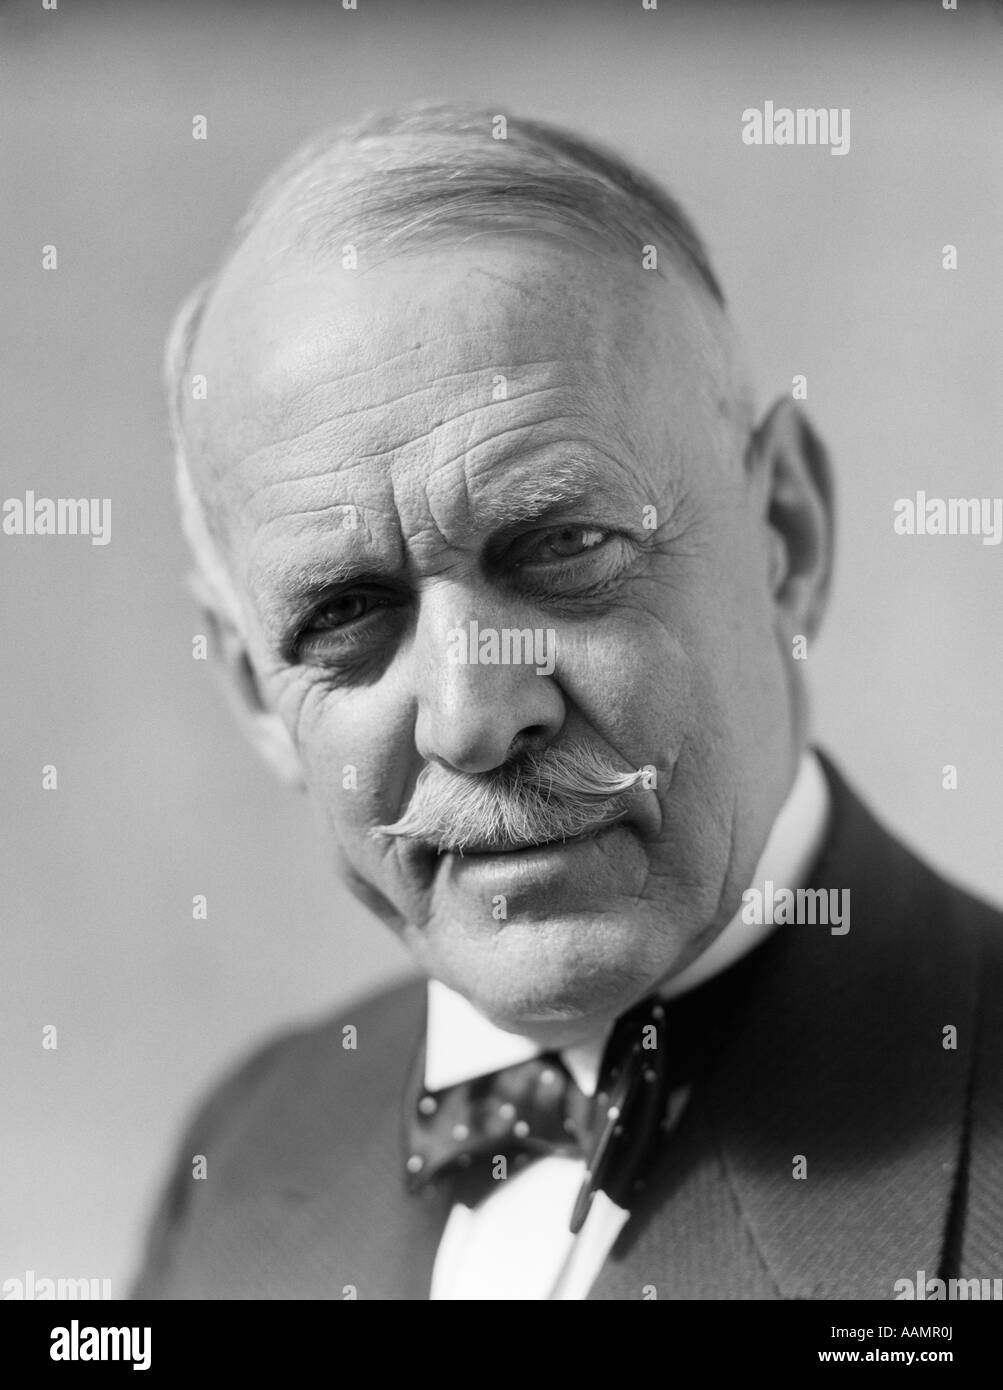 1930s ritratto senior uomo vecchio filtro Bow Tie baffi grave espressione facciale preoccupazione preoccuparsi Foto Stock